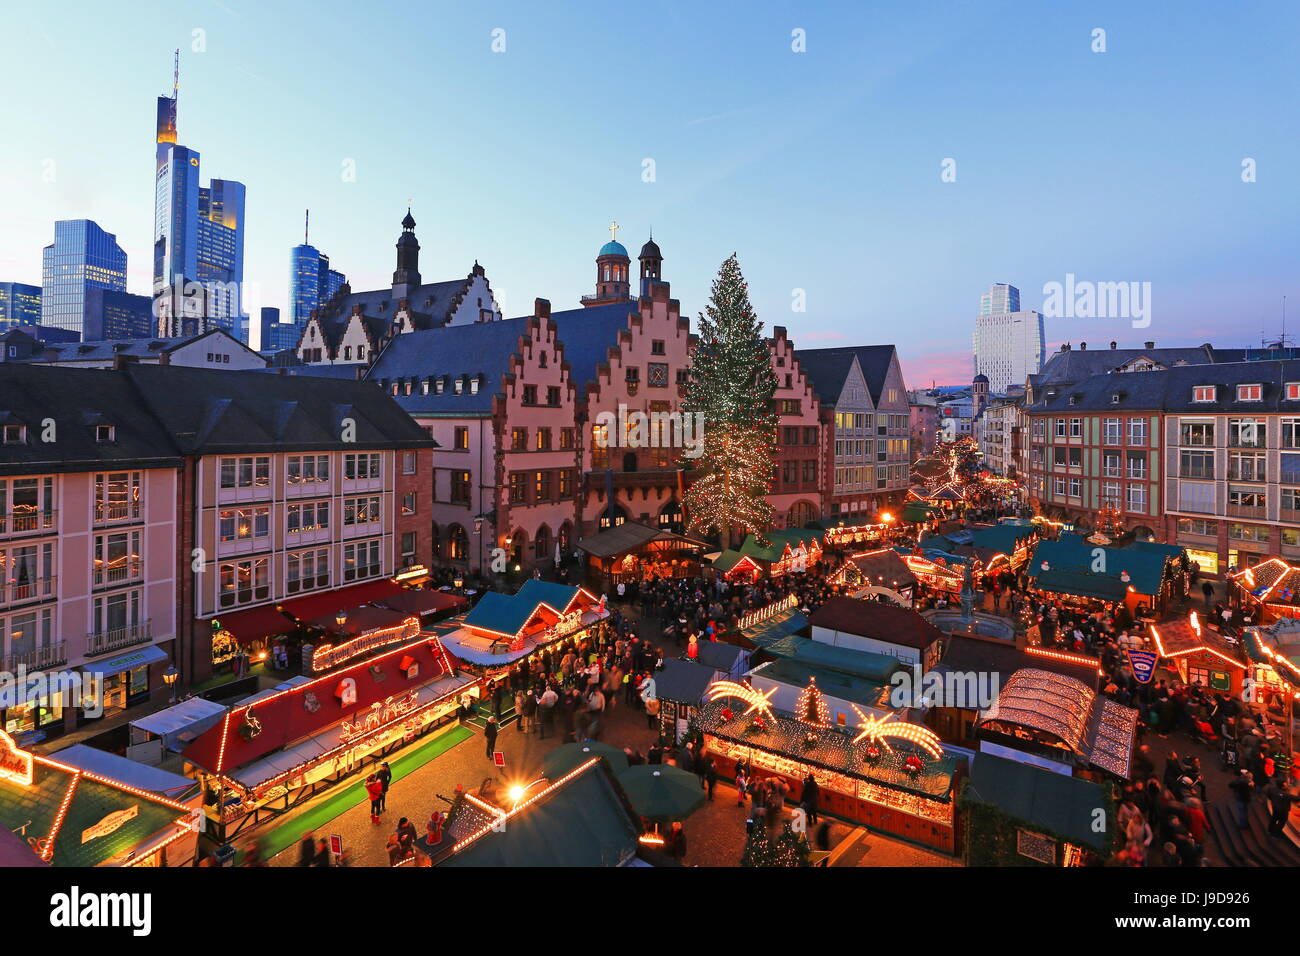 Weihnachtsmarkt am Roemerberg-Platz, Frankfurt Am Main, Hessen, Deutschland, Europa Stockfoto